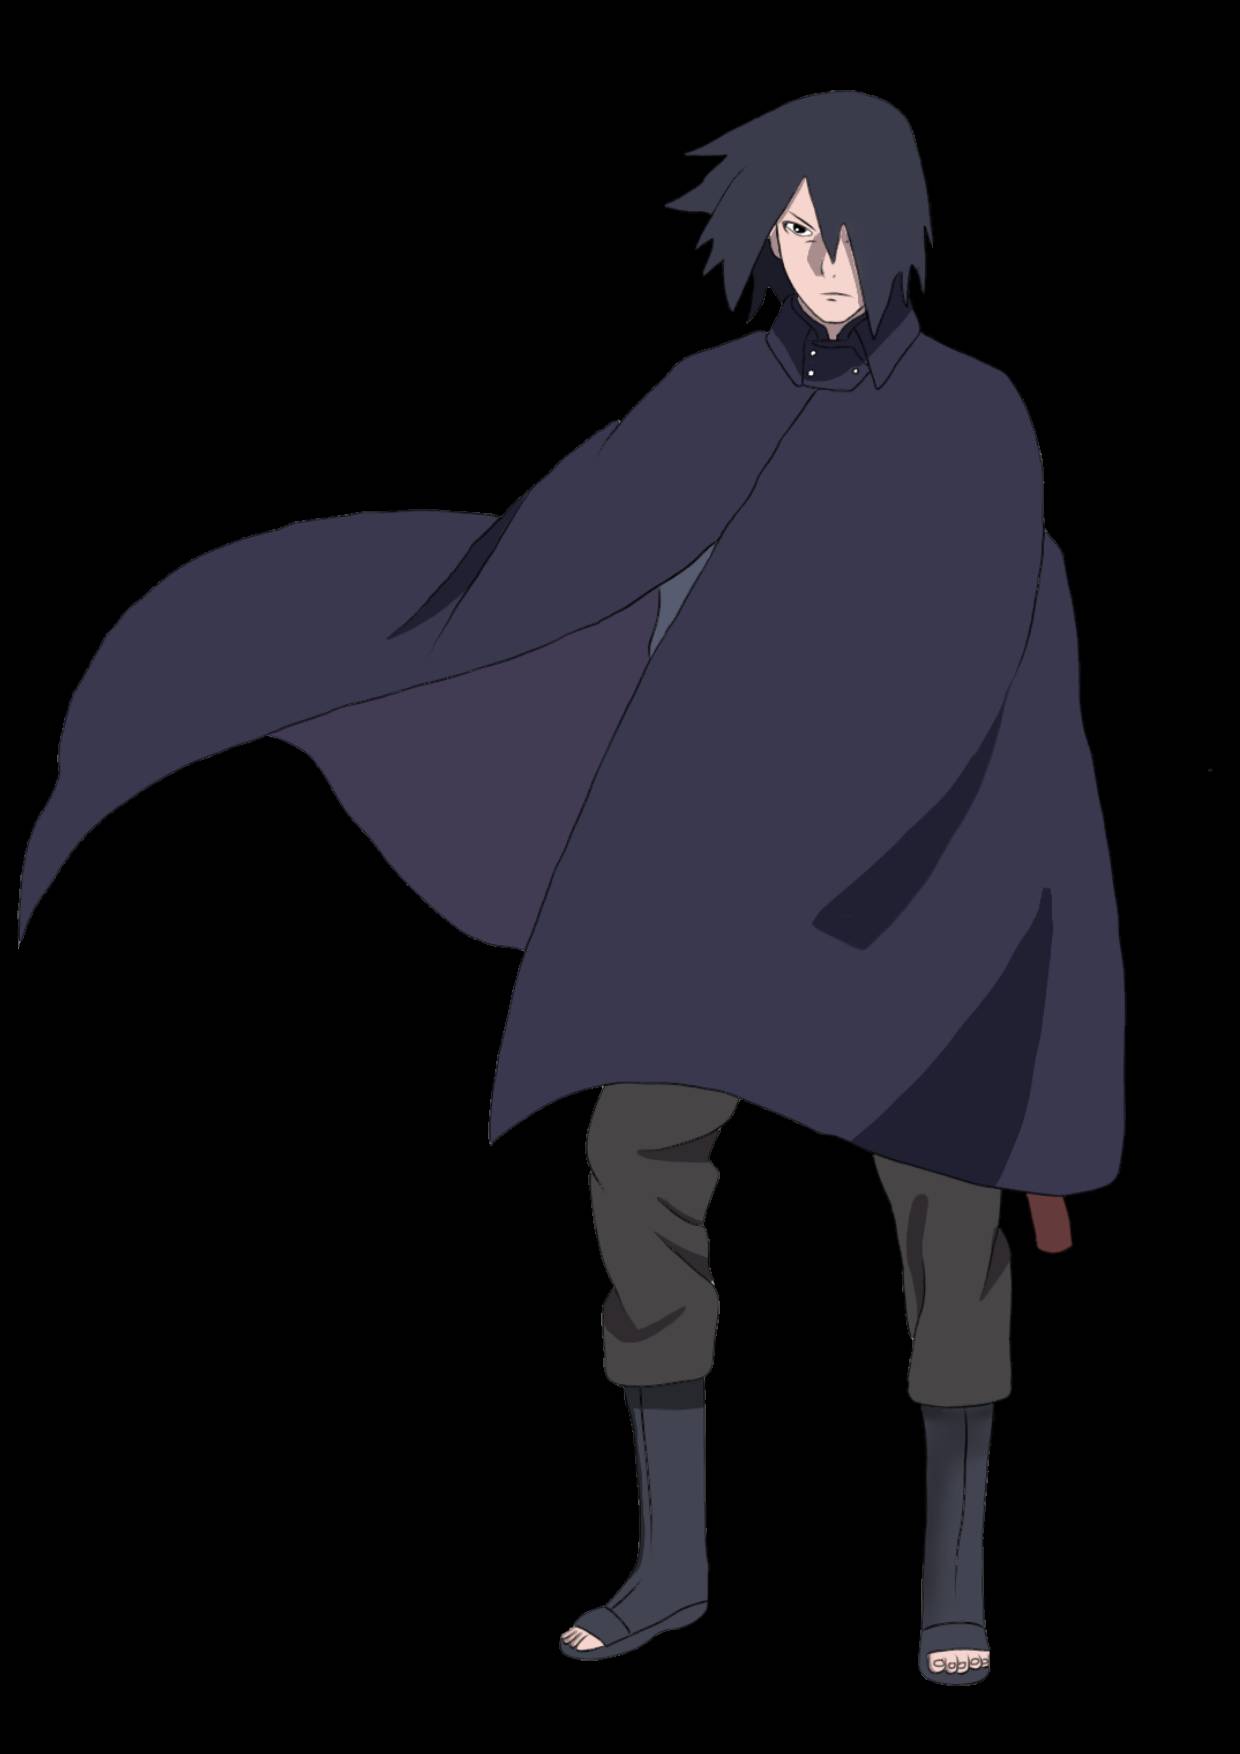 Sasuke Uchiha, Boruto: Naruto Next Generations